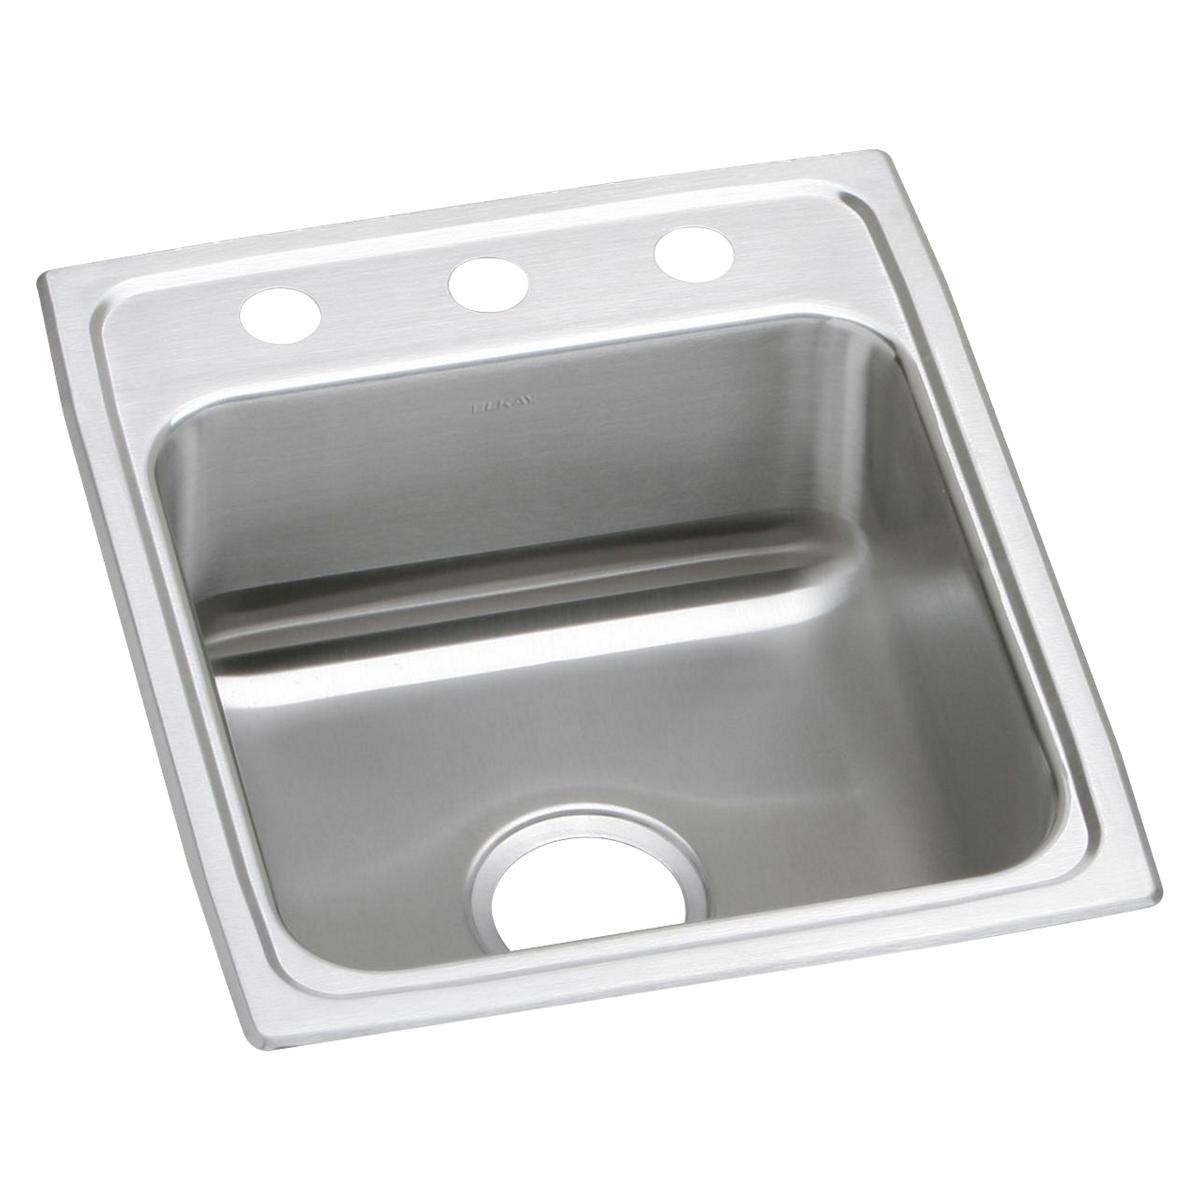 Elkay Stainless Steel Single Bowl Drop-in Sink 1366473